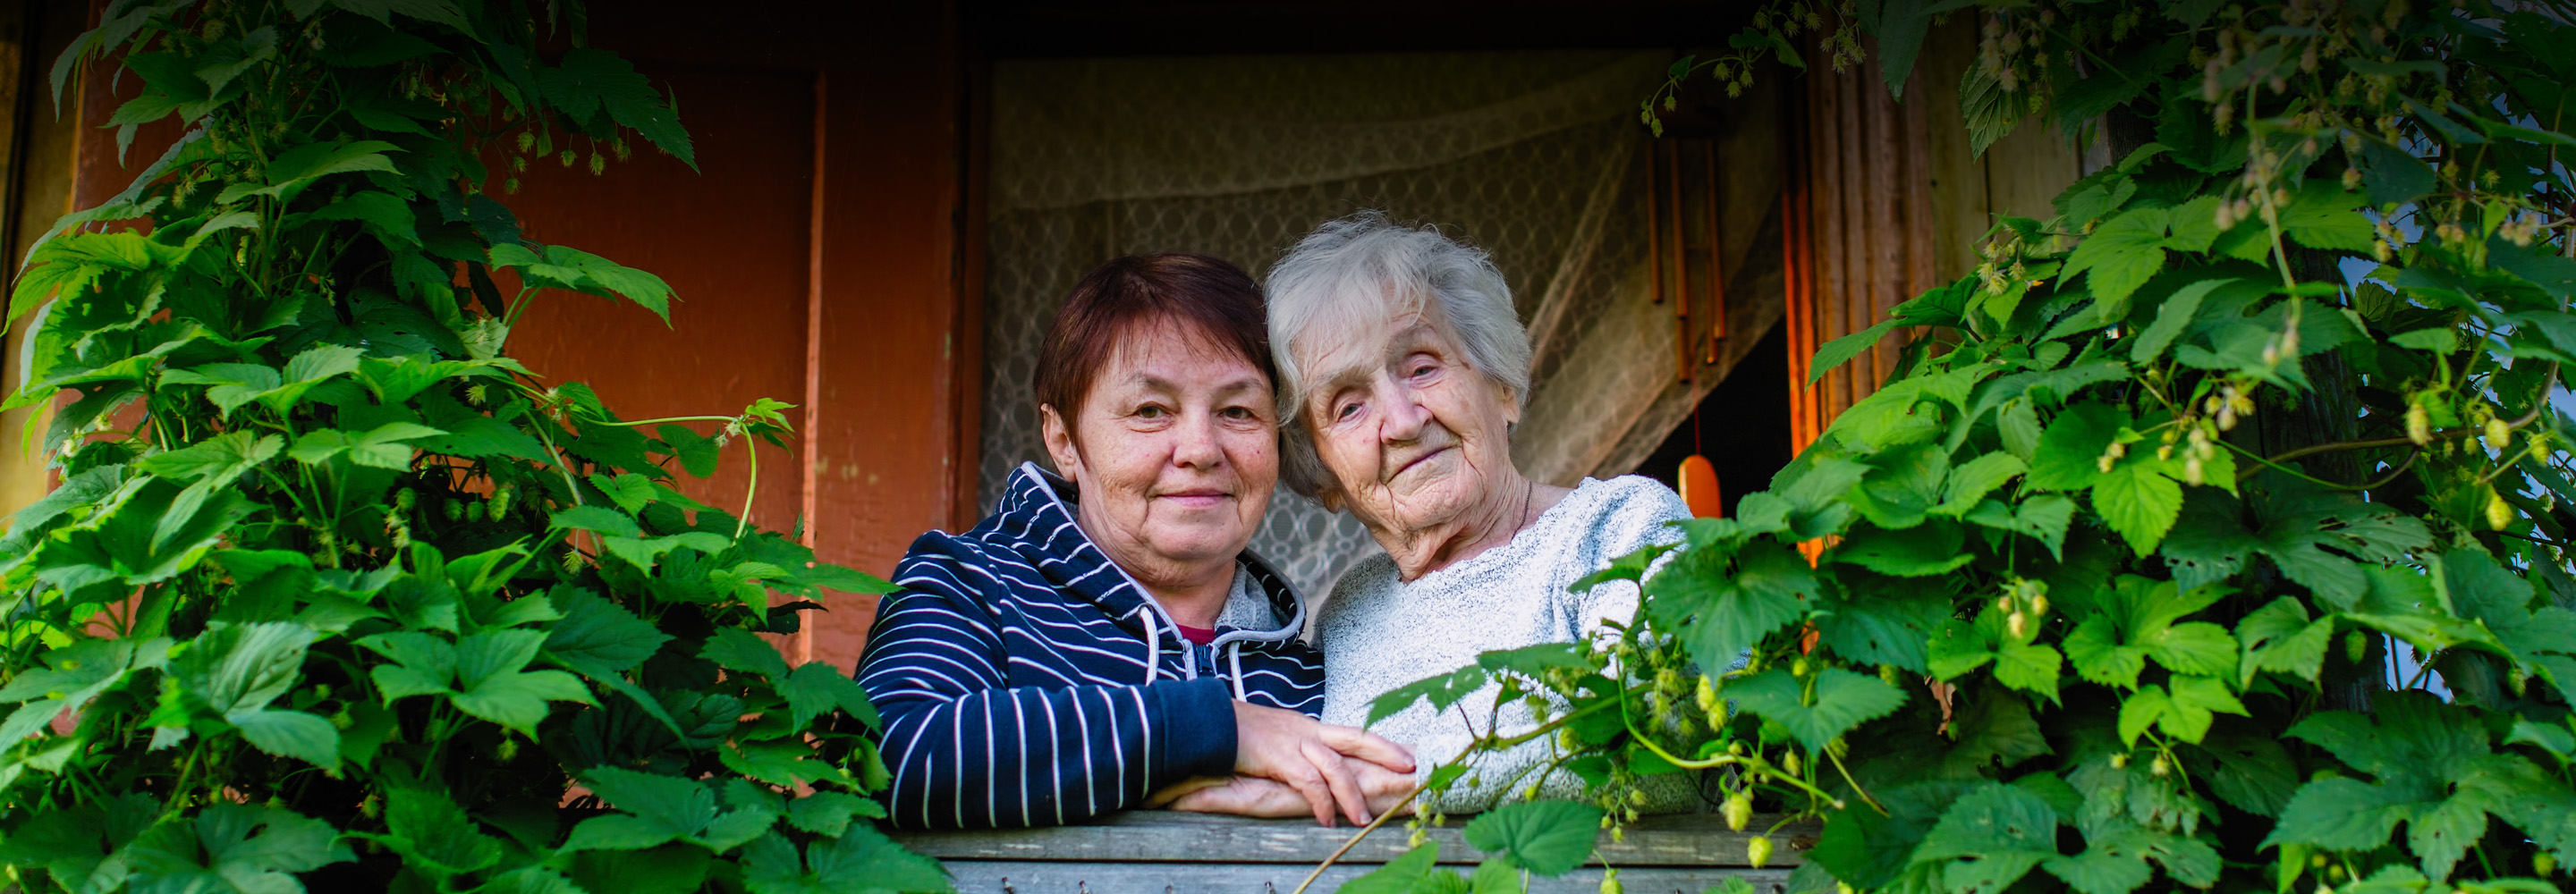 Закупка дров и поездки по России: 9 проектов помощи пожилым людям